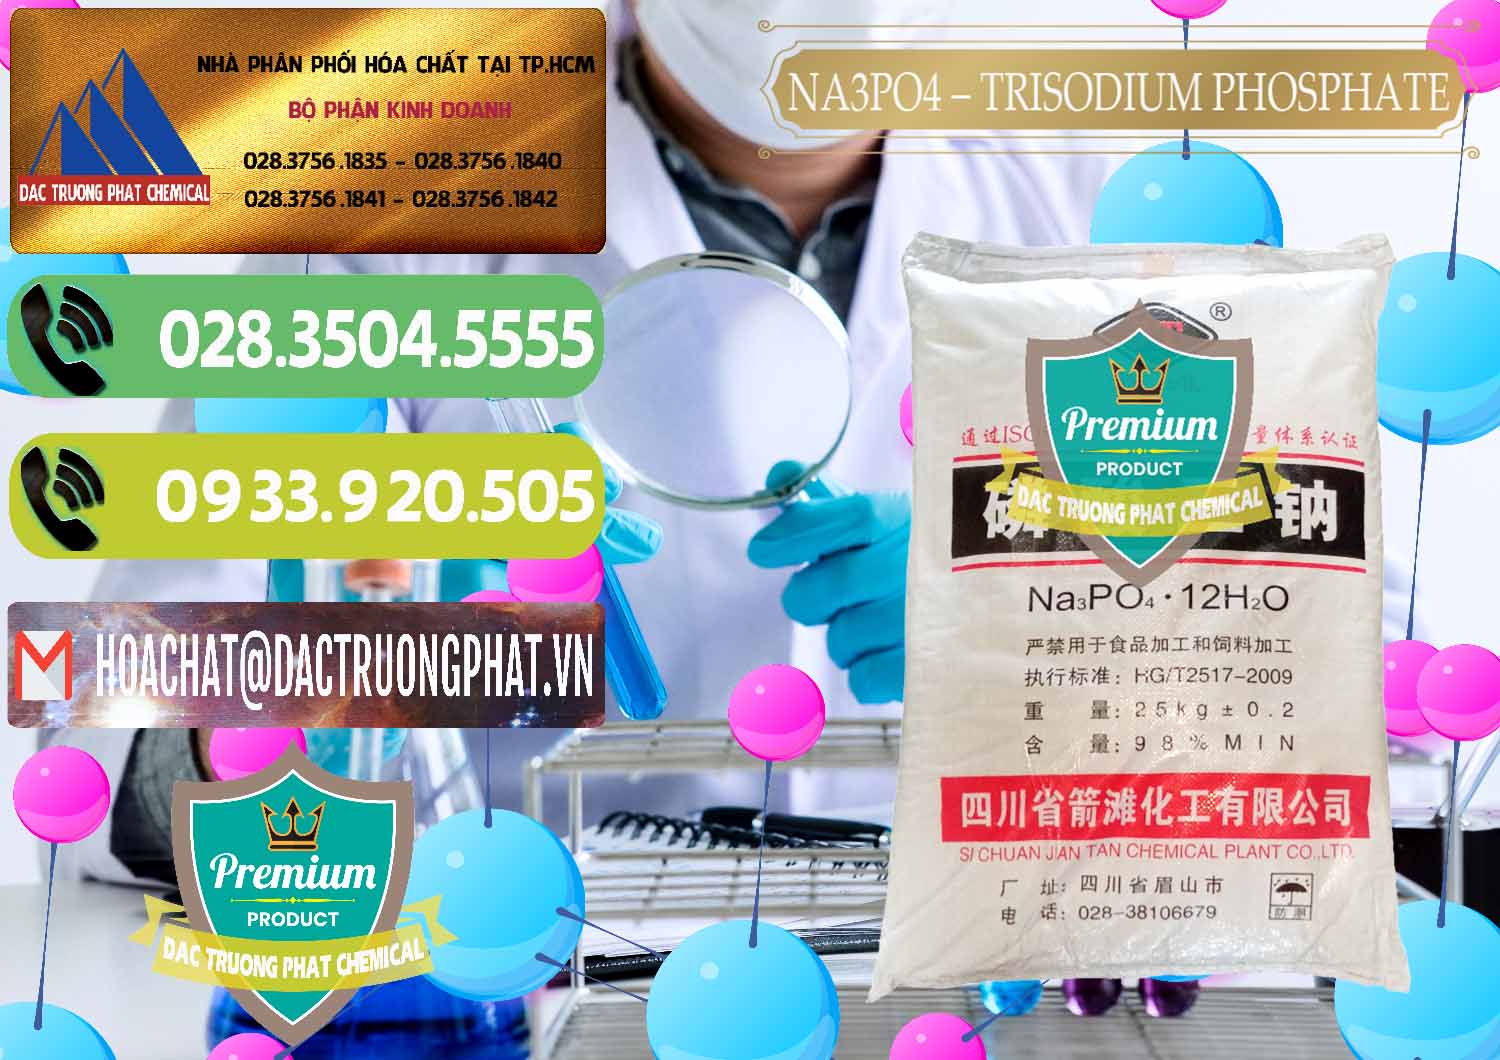 Nơi chuyên bán và phân phối Na3PO4 – Trisodium Phosphate Trung Quốc China JT - 0102 - Cty phân phối & cung cấp hóa chất tại TP.HCM - hoachatmientay.vn